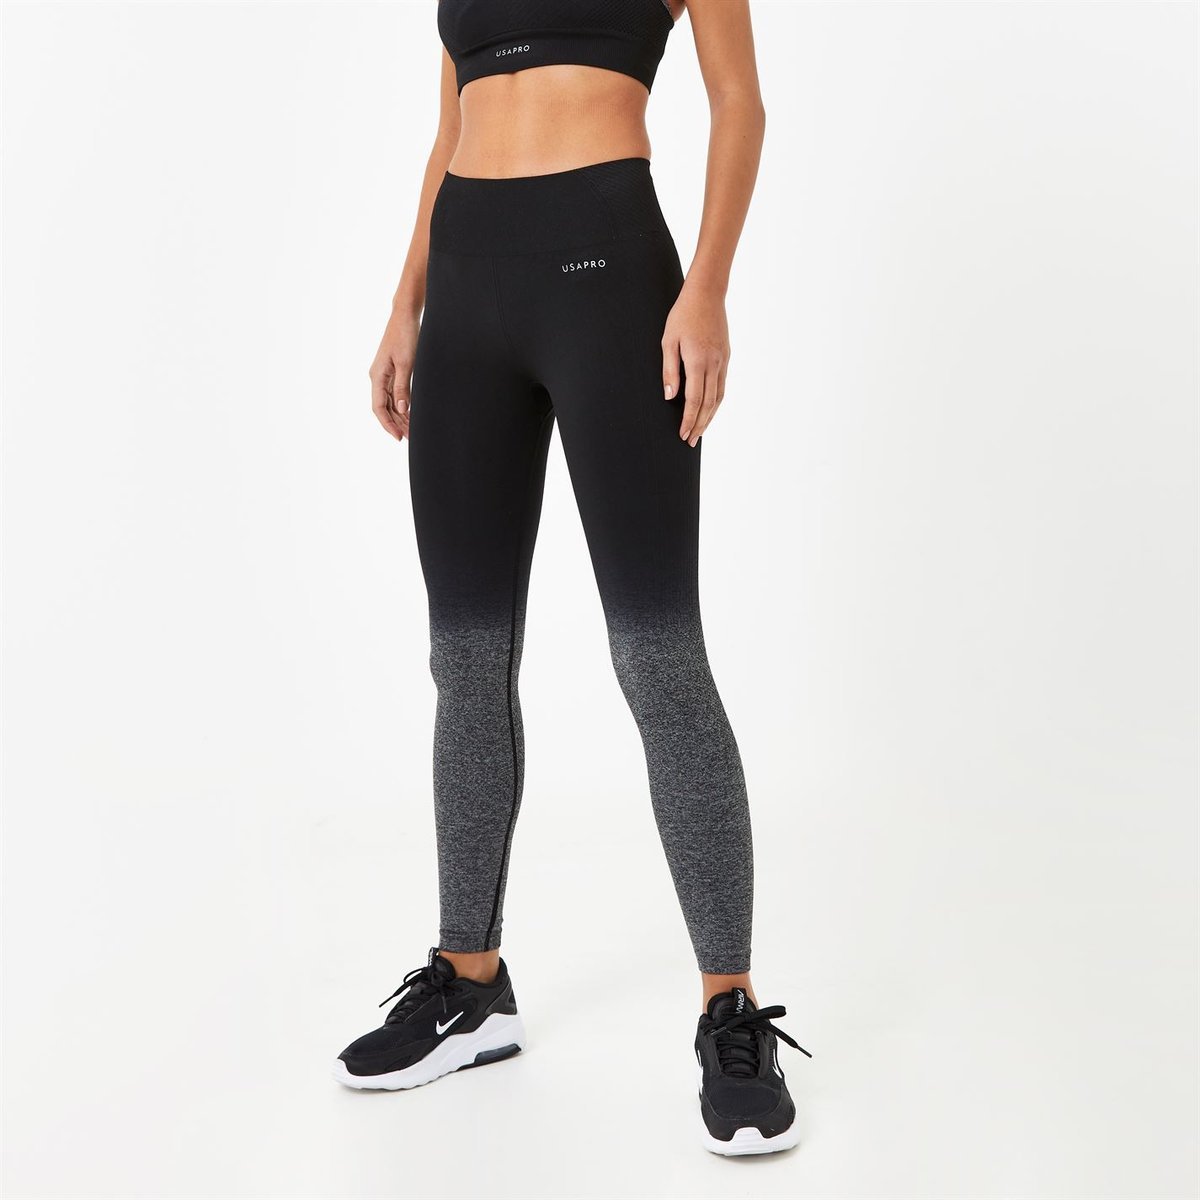 Nike Women's Leg-A-See Futura Desert Berry/White HW Leggings